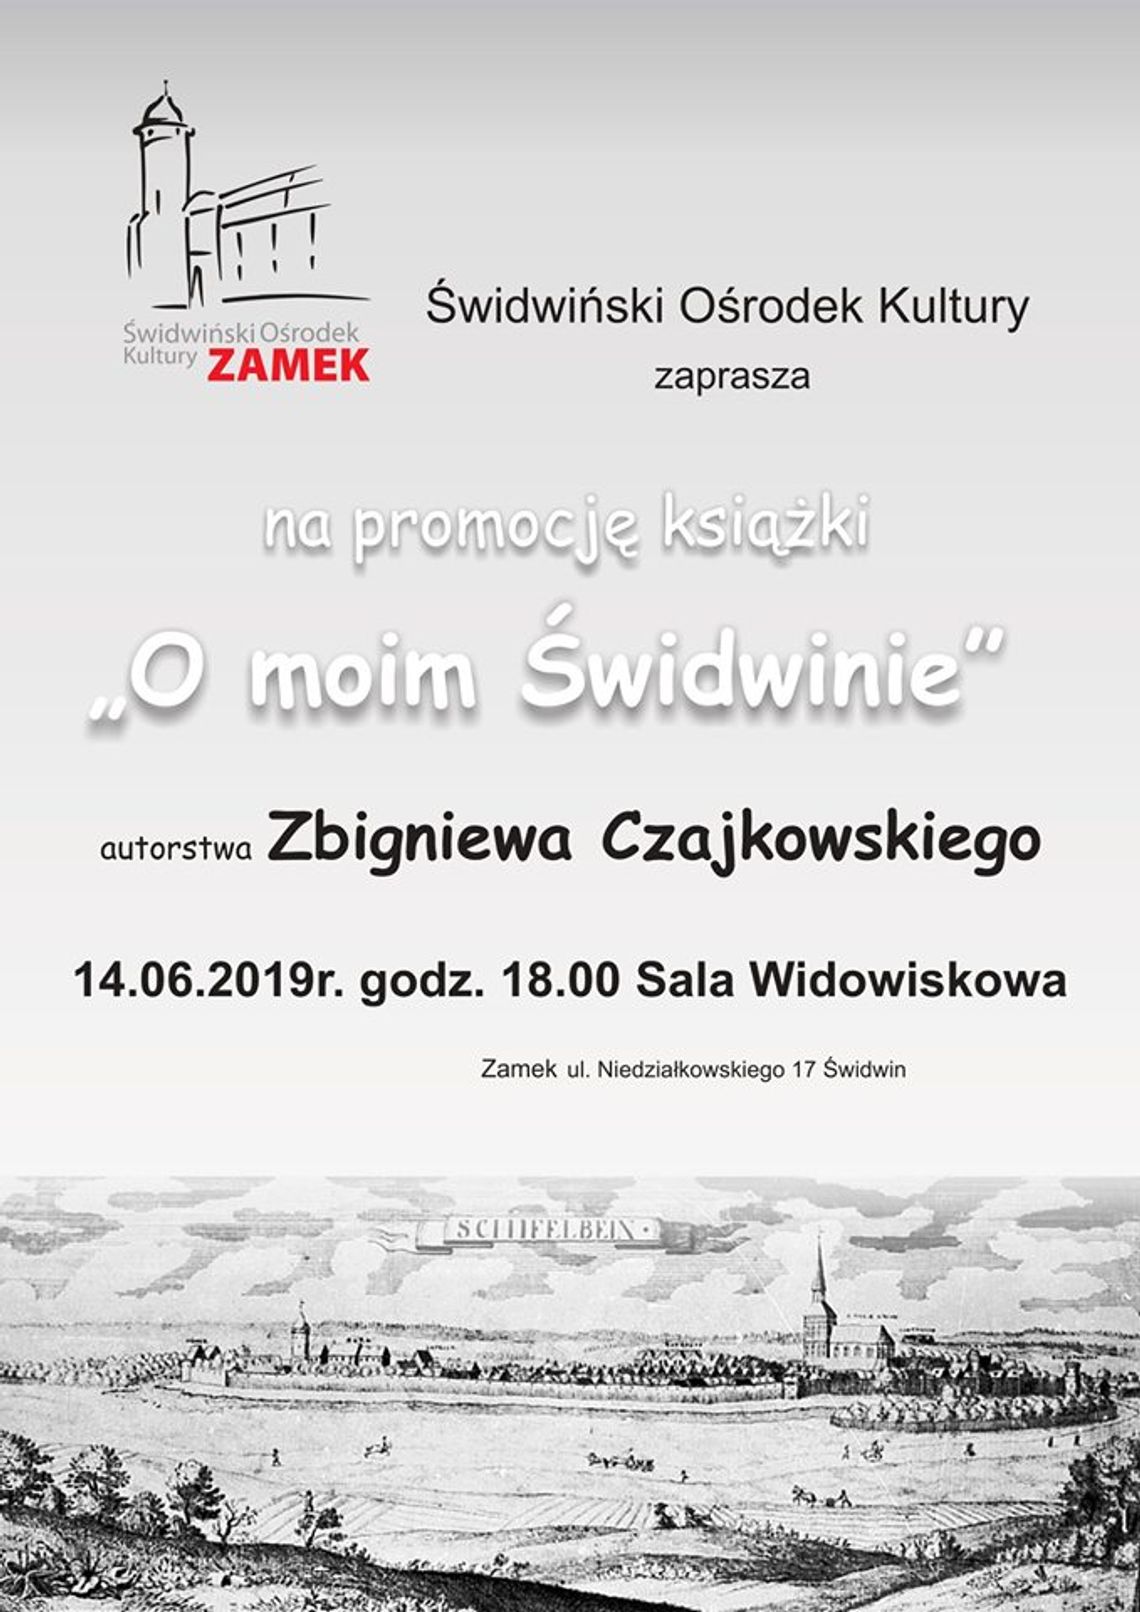 Promocja książki Zbigniewa Czajkowskiego "O moim Świdwinie"